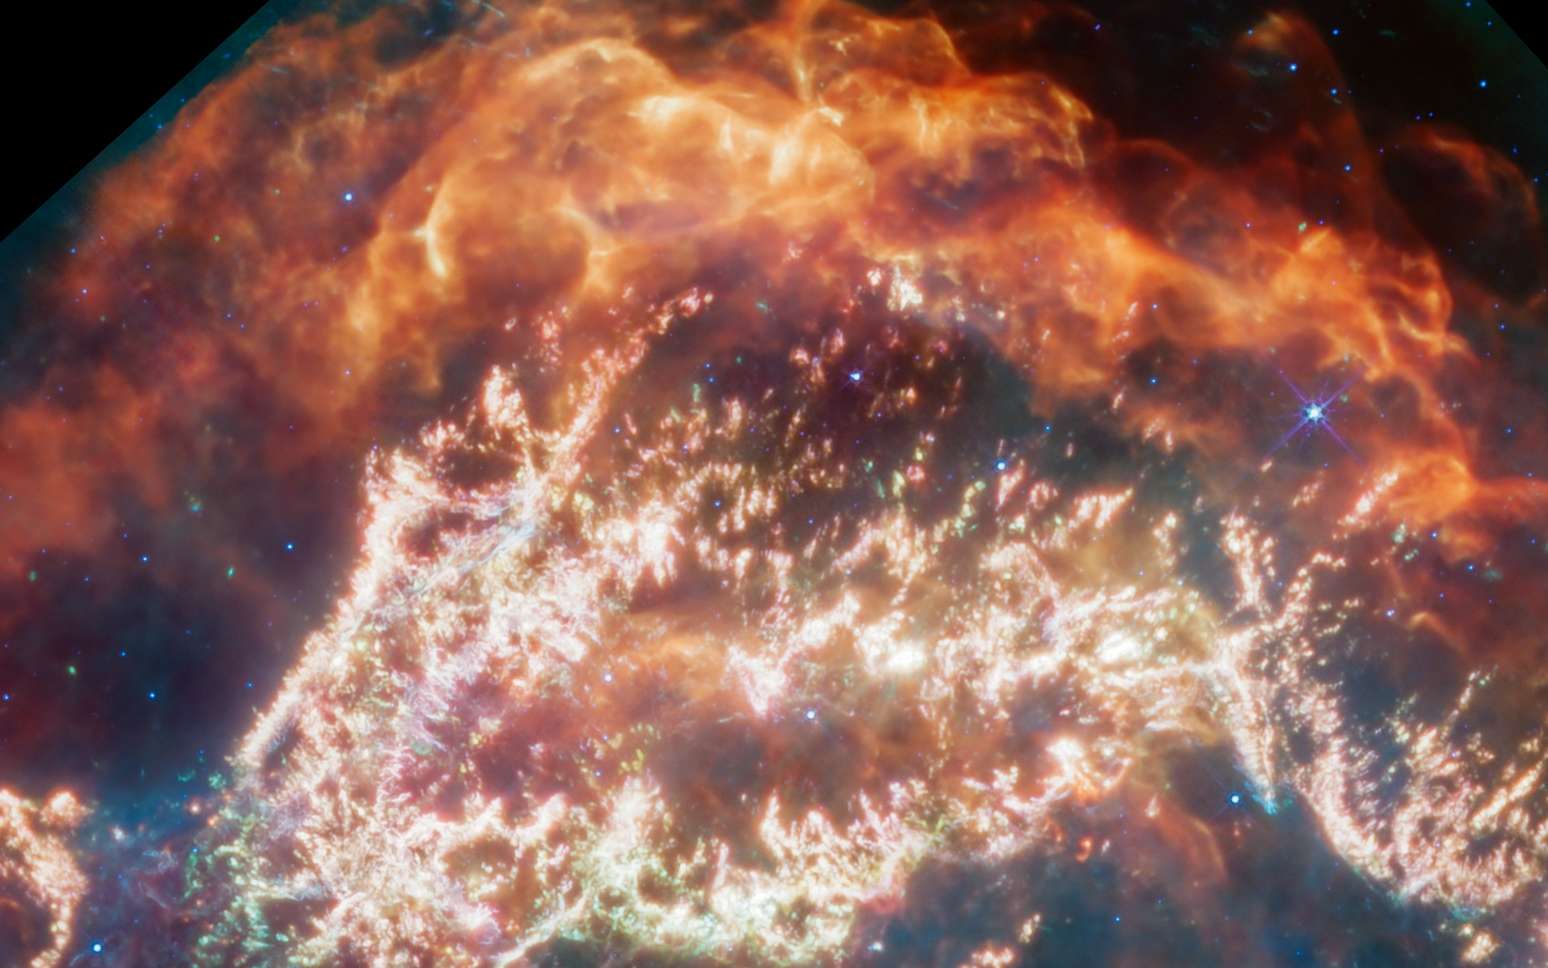 Le télescope James-Webb révèle « des détails incroyables » d'une récente supernova dans la Voie lactée